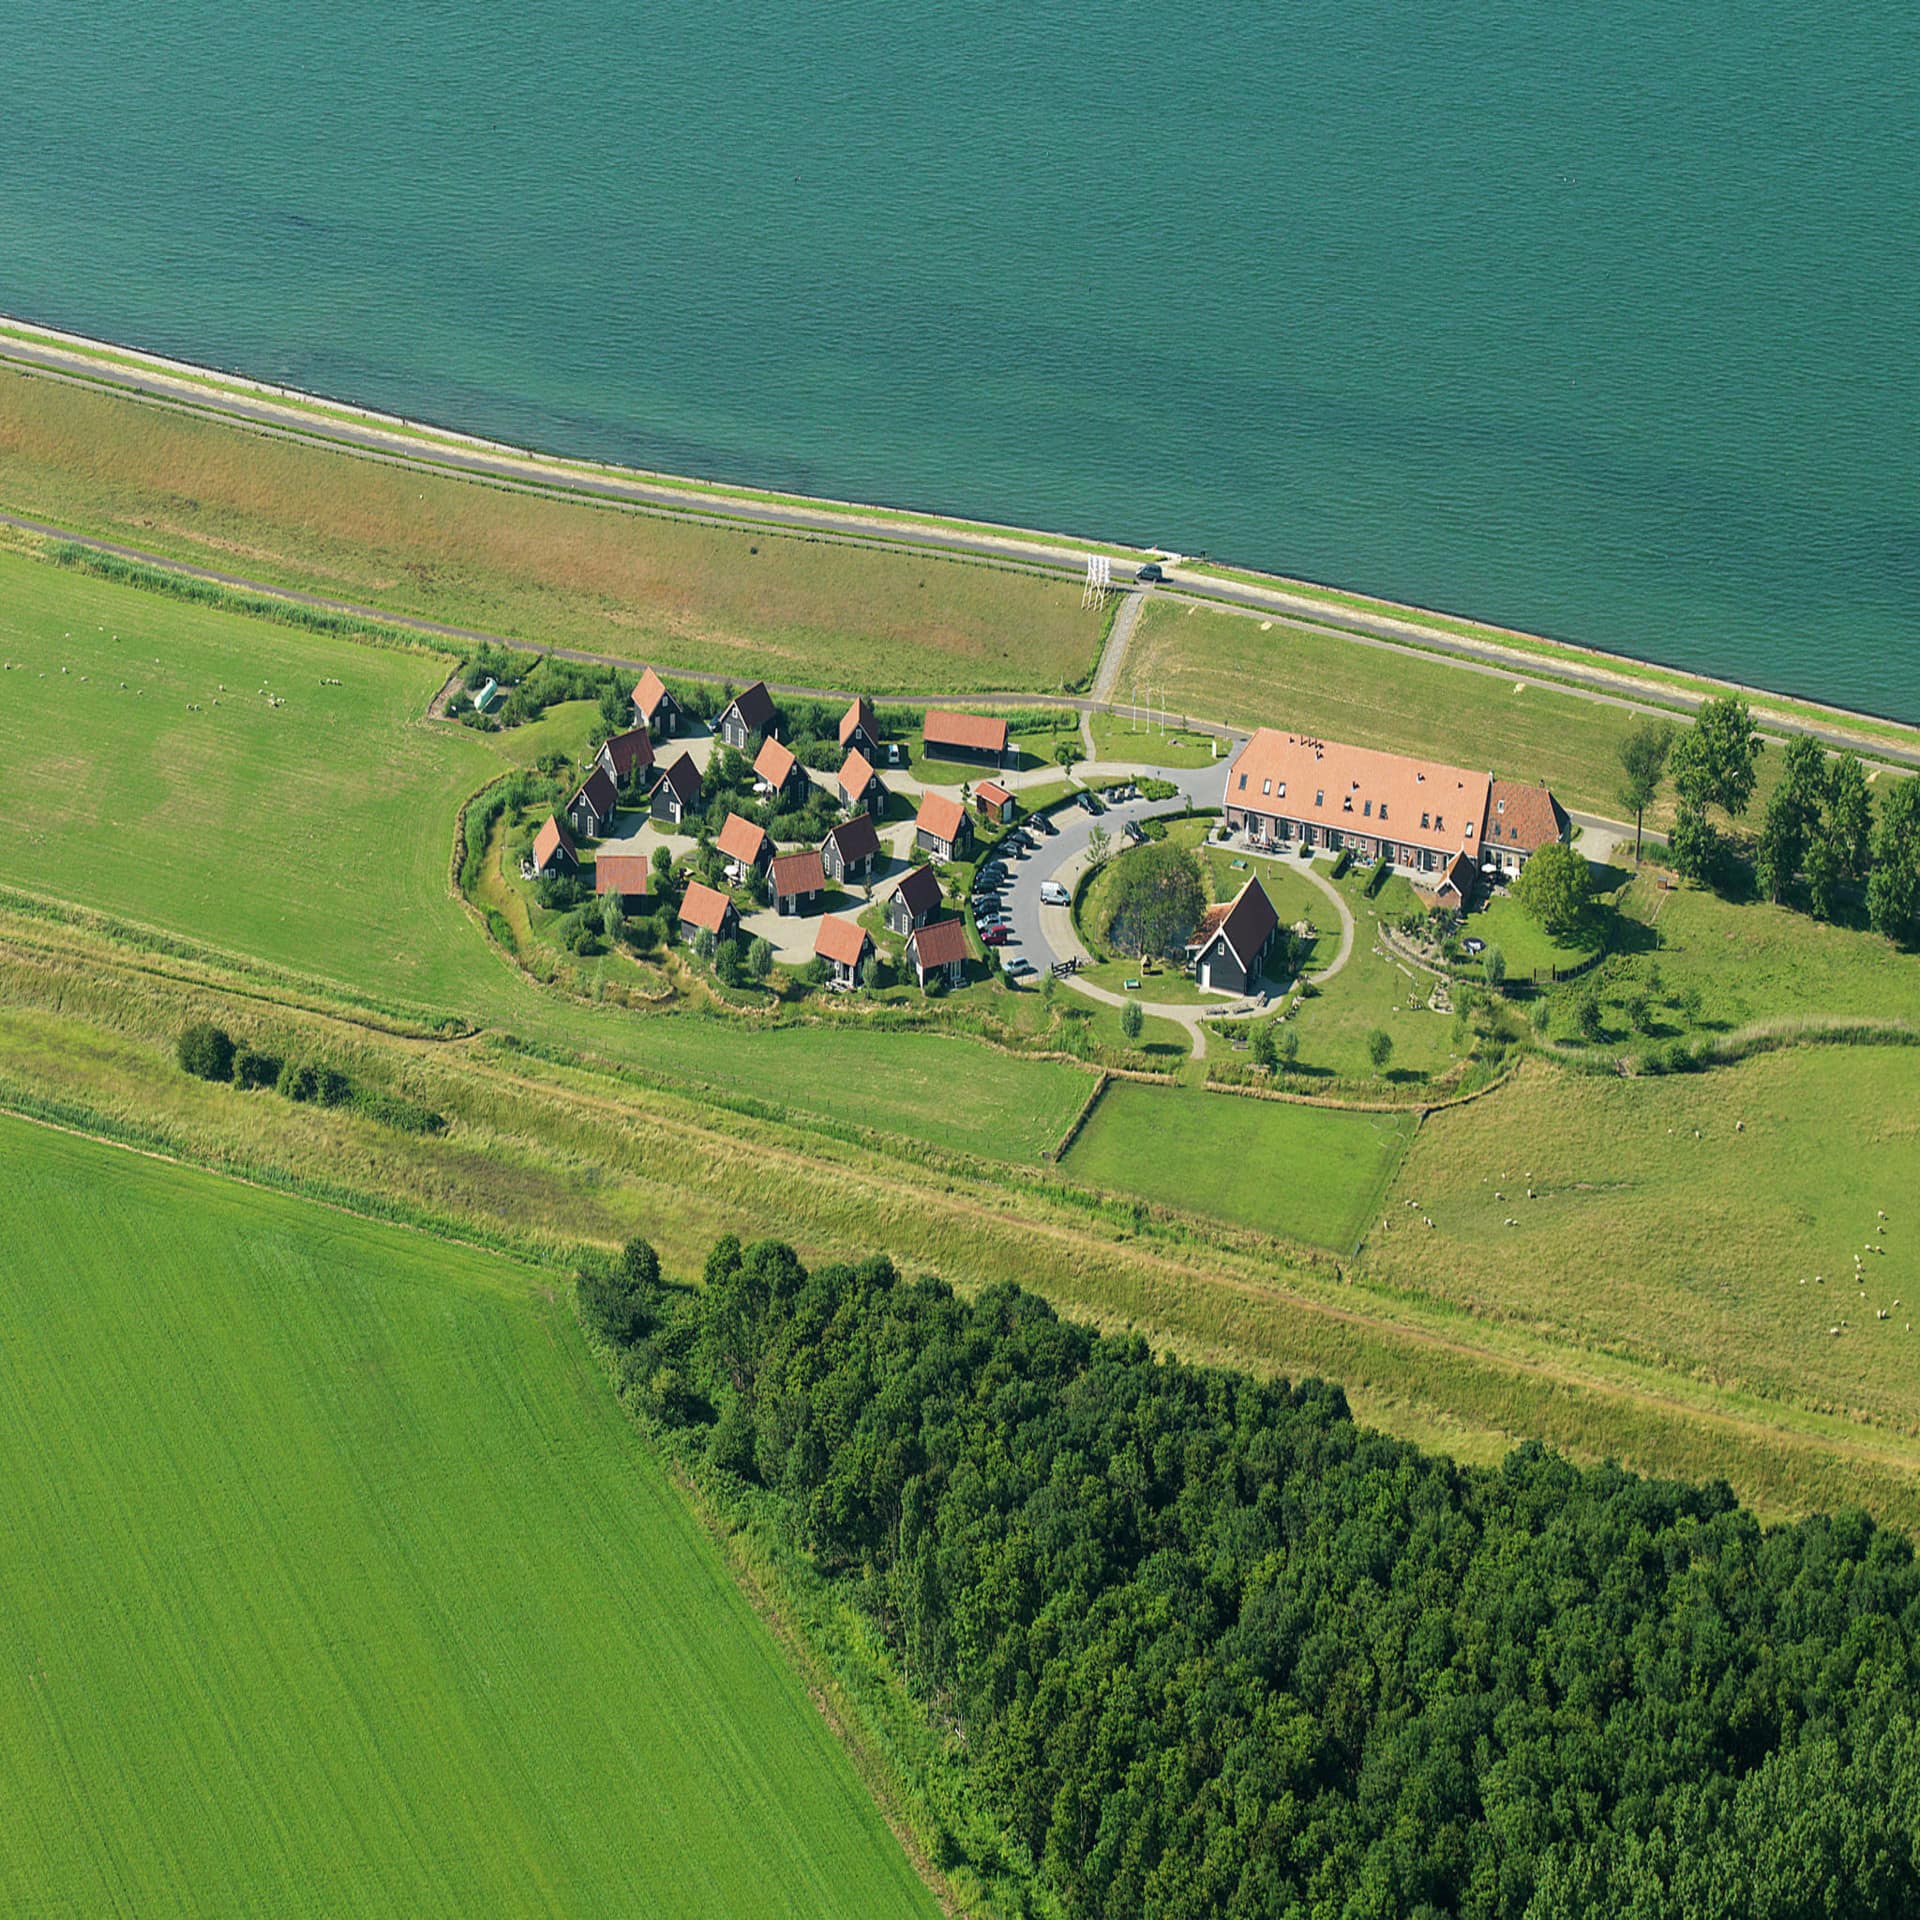 Blick aus der Luft auf einen Ferienpark am Meer in Zeeland.